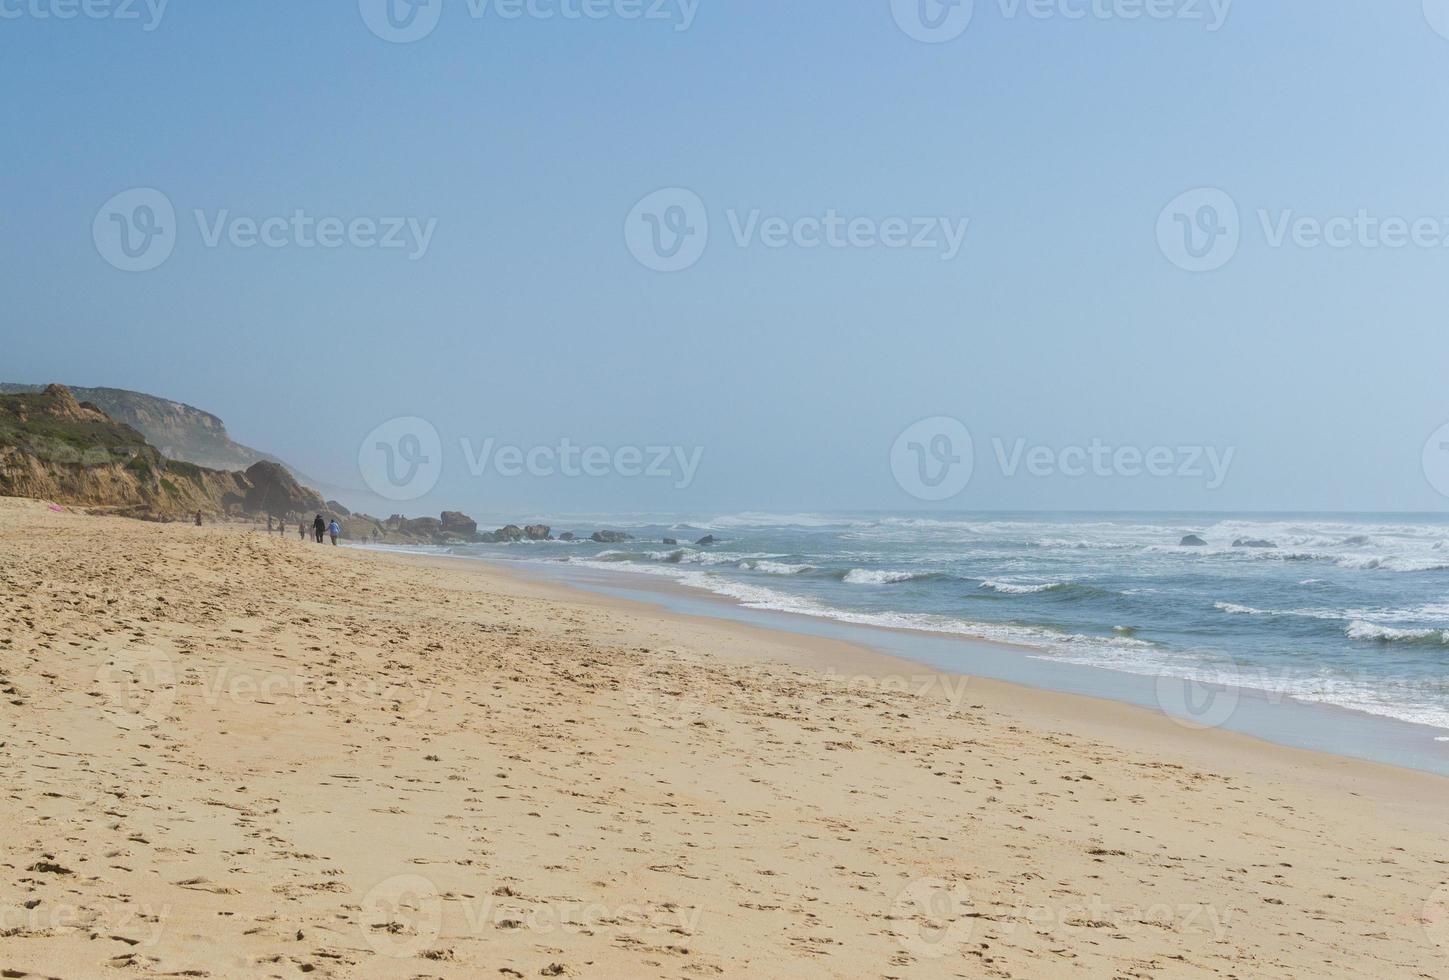 playa junto al mar con gente descansando, lugar de vacaciones. montañas, mar y olas. viajar a europa portugal. foto